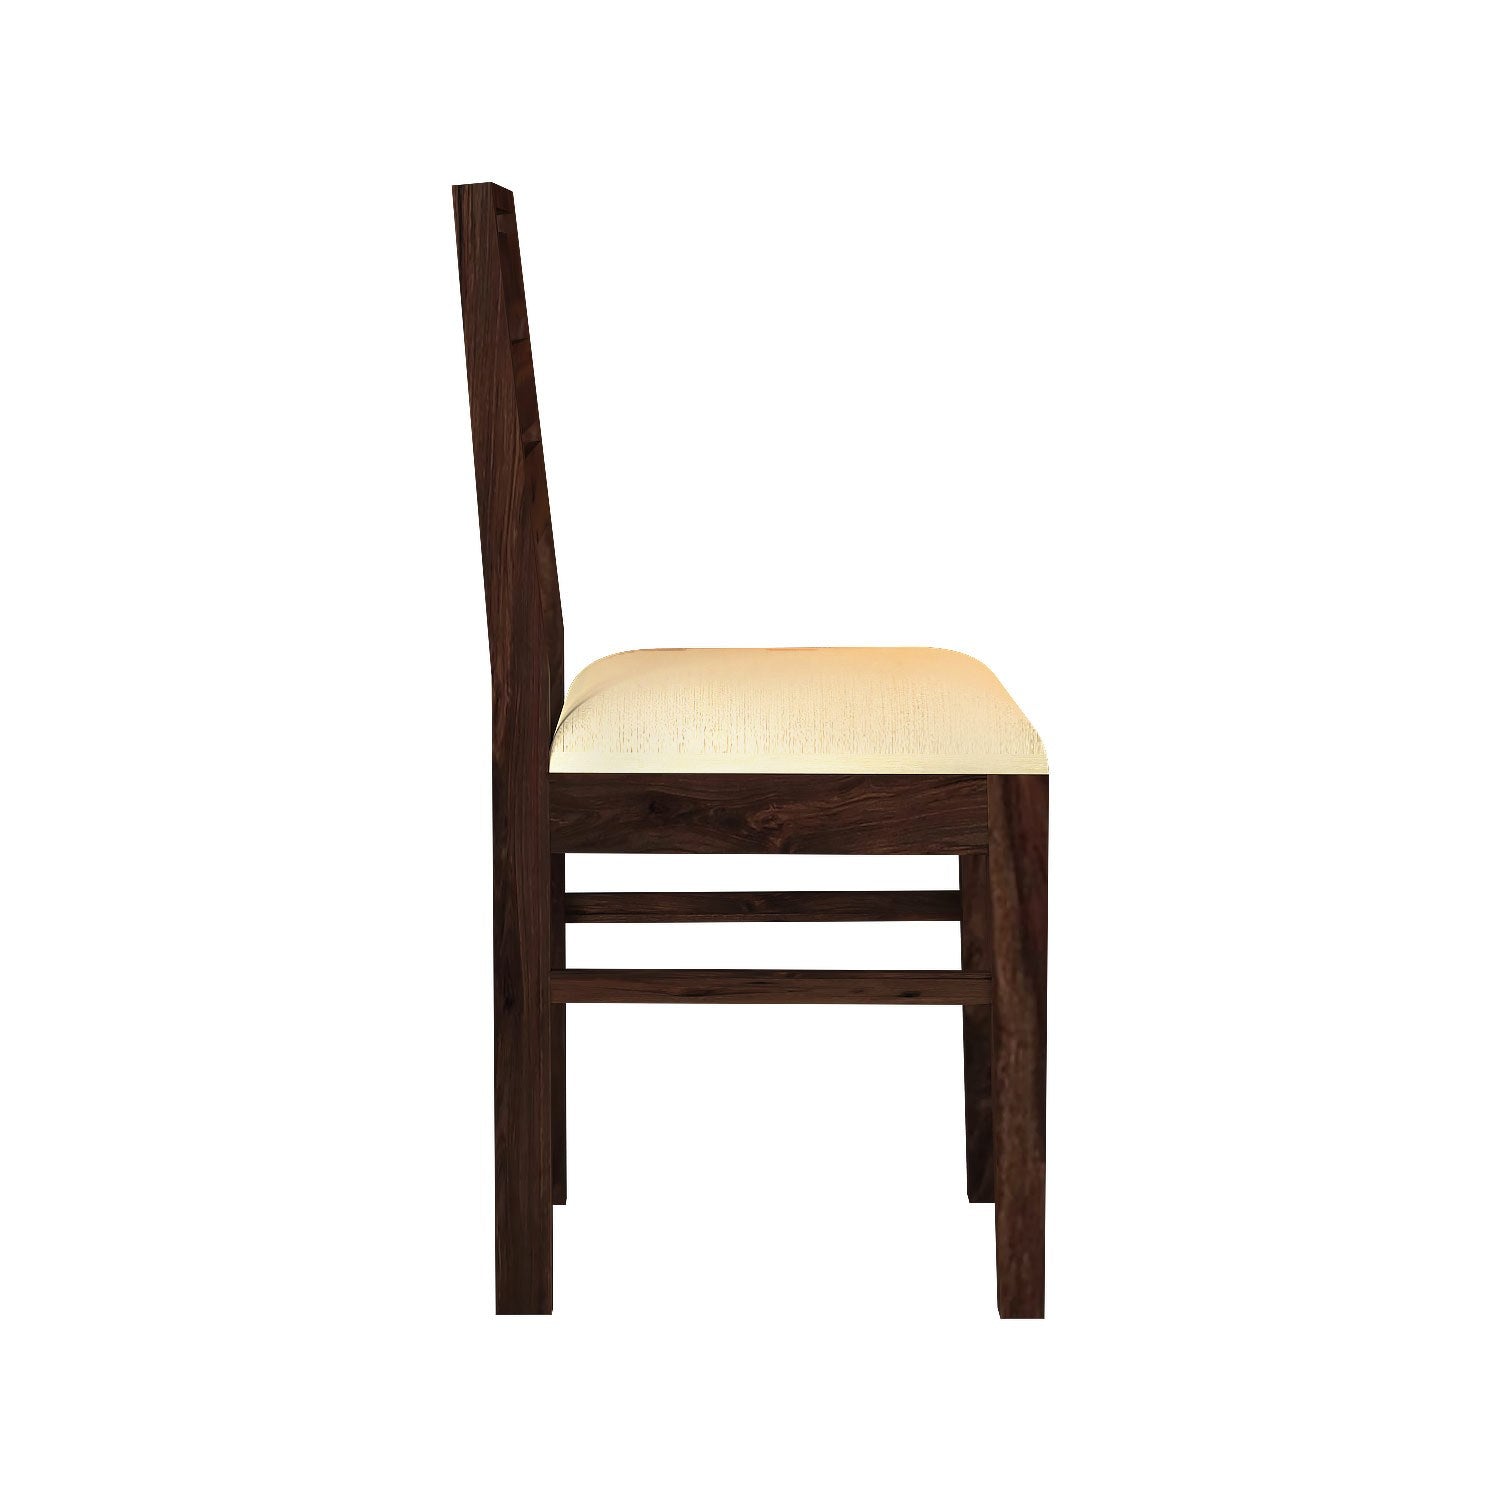 Feelinn Solid Sheesham Wood Chair (With Cushion, Walnut Finish)